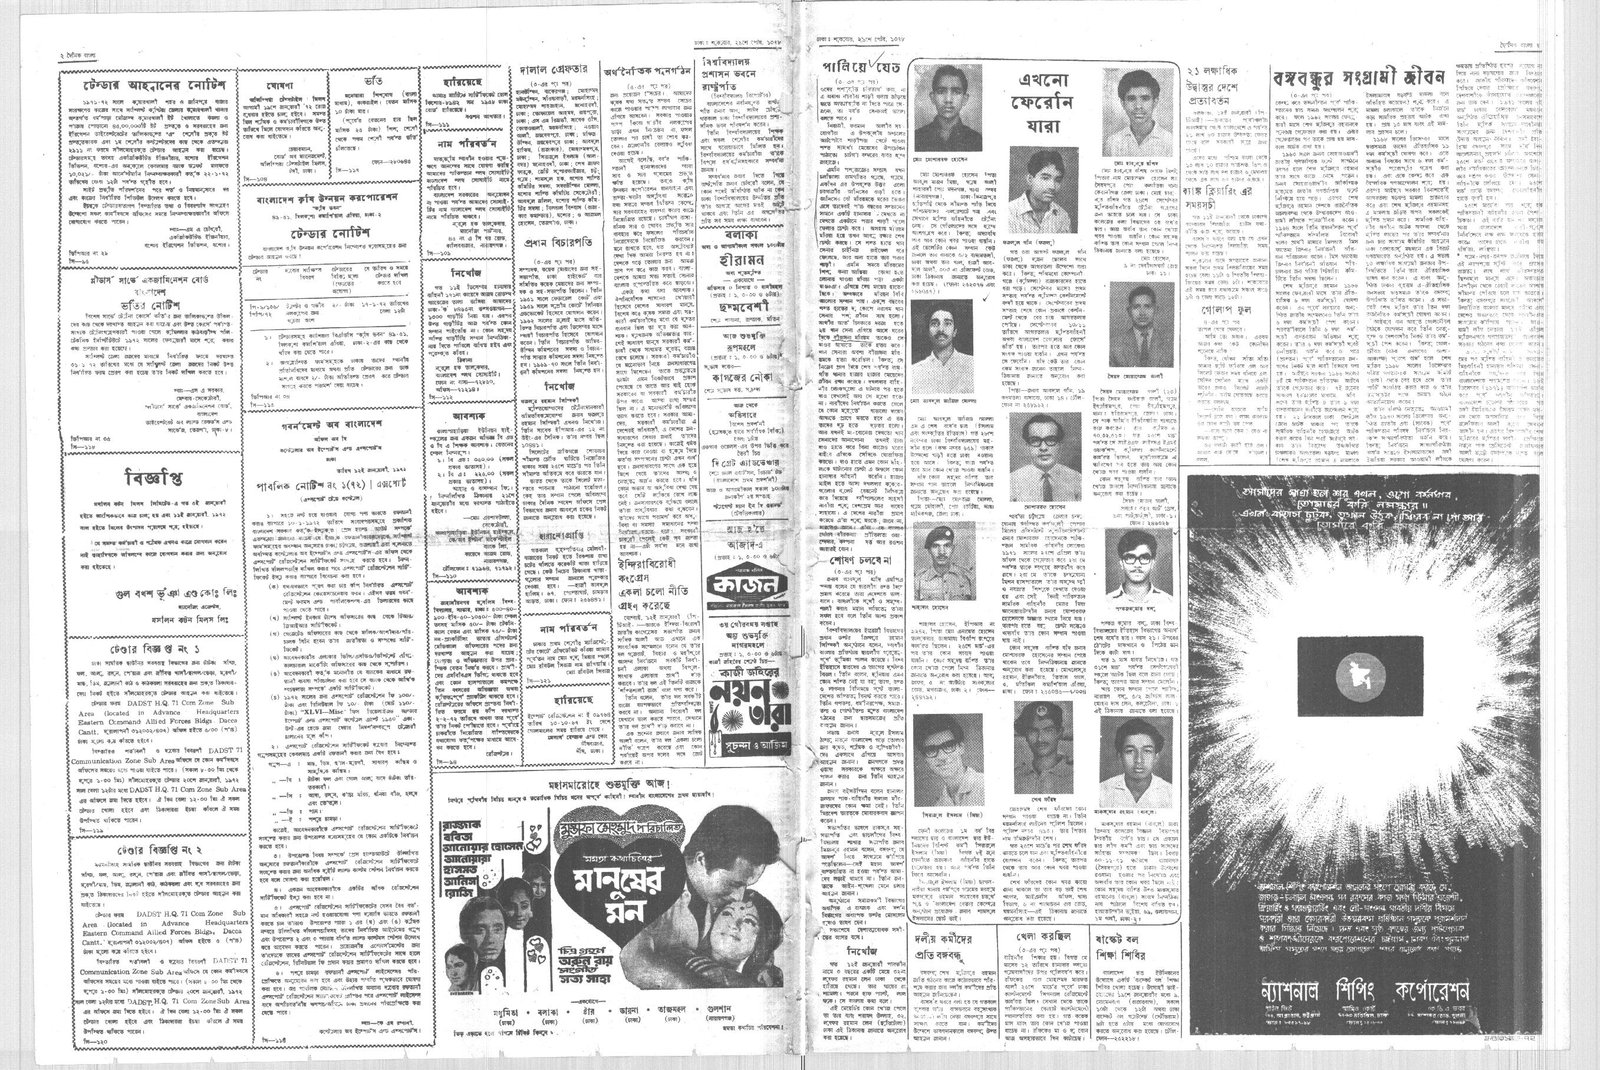 14JAN1972-DAINIK BANGLA-Regular-Page 2 and 7